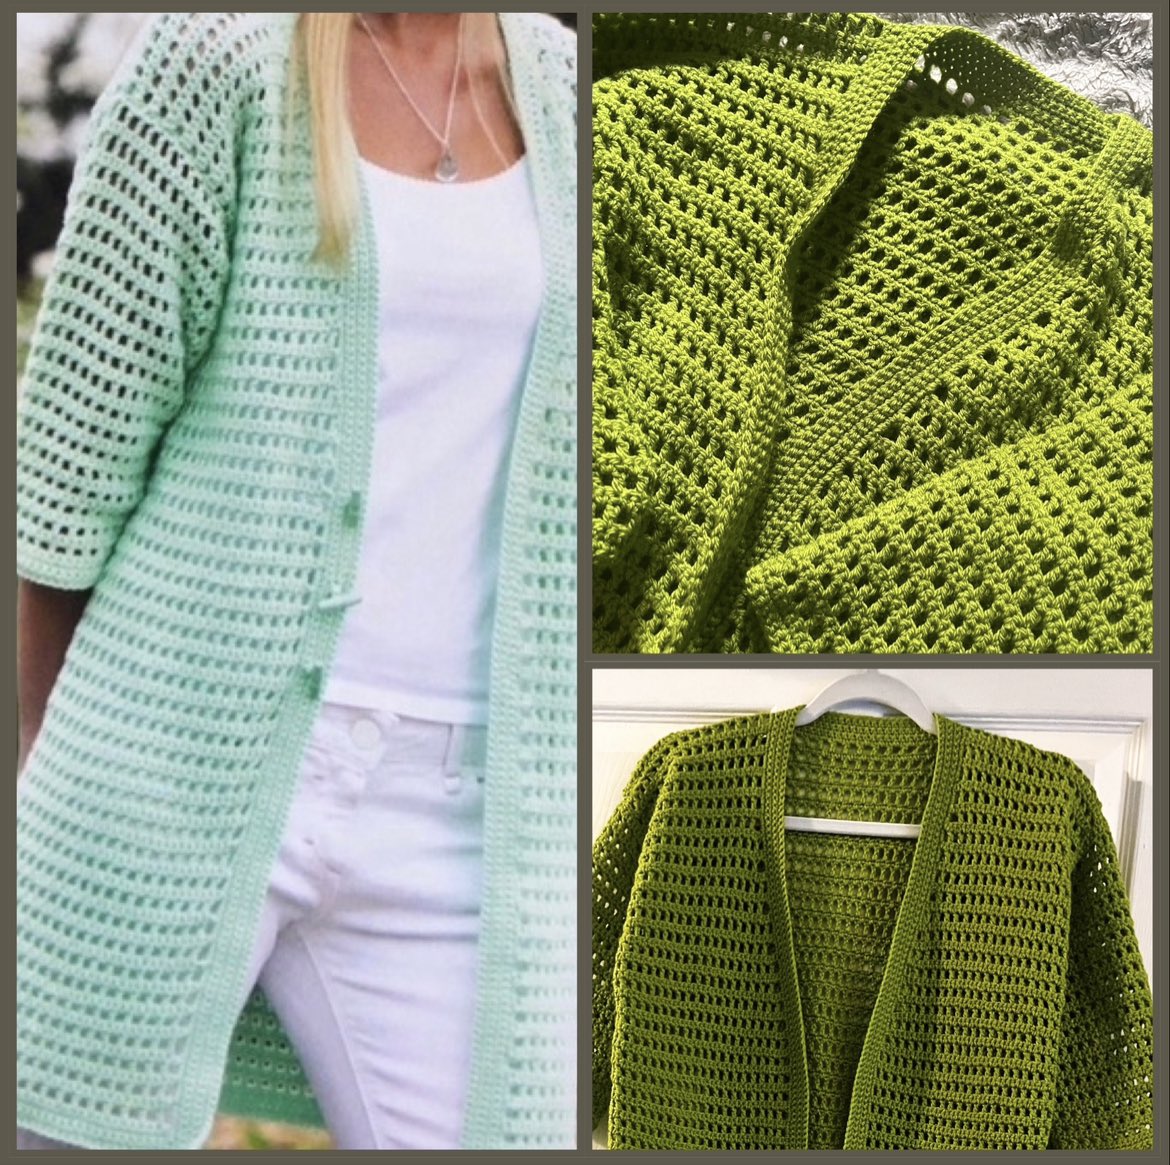 Crochet Longline Cardigan Pattern 💚🧶 #crochet #summer #cardigan #easypattern #yarn #crochetwear #MHHSBD #craftbizparty #wip #magic etsy.com/listing/103660…